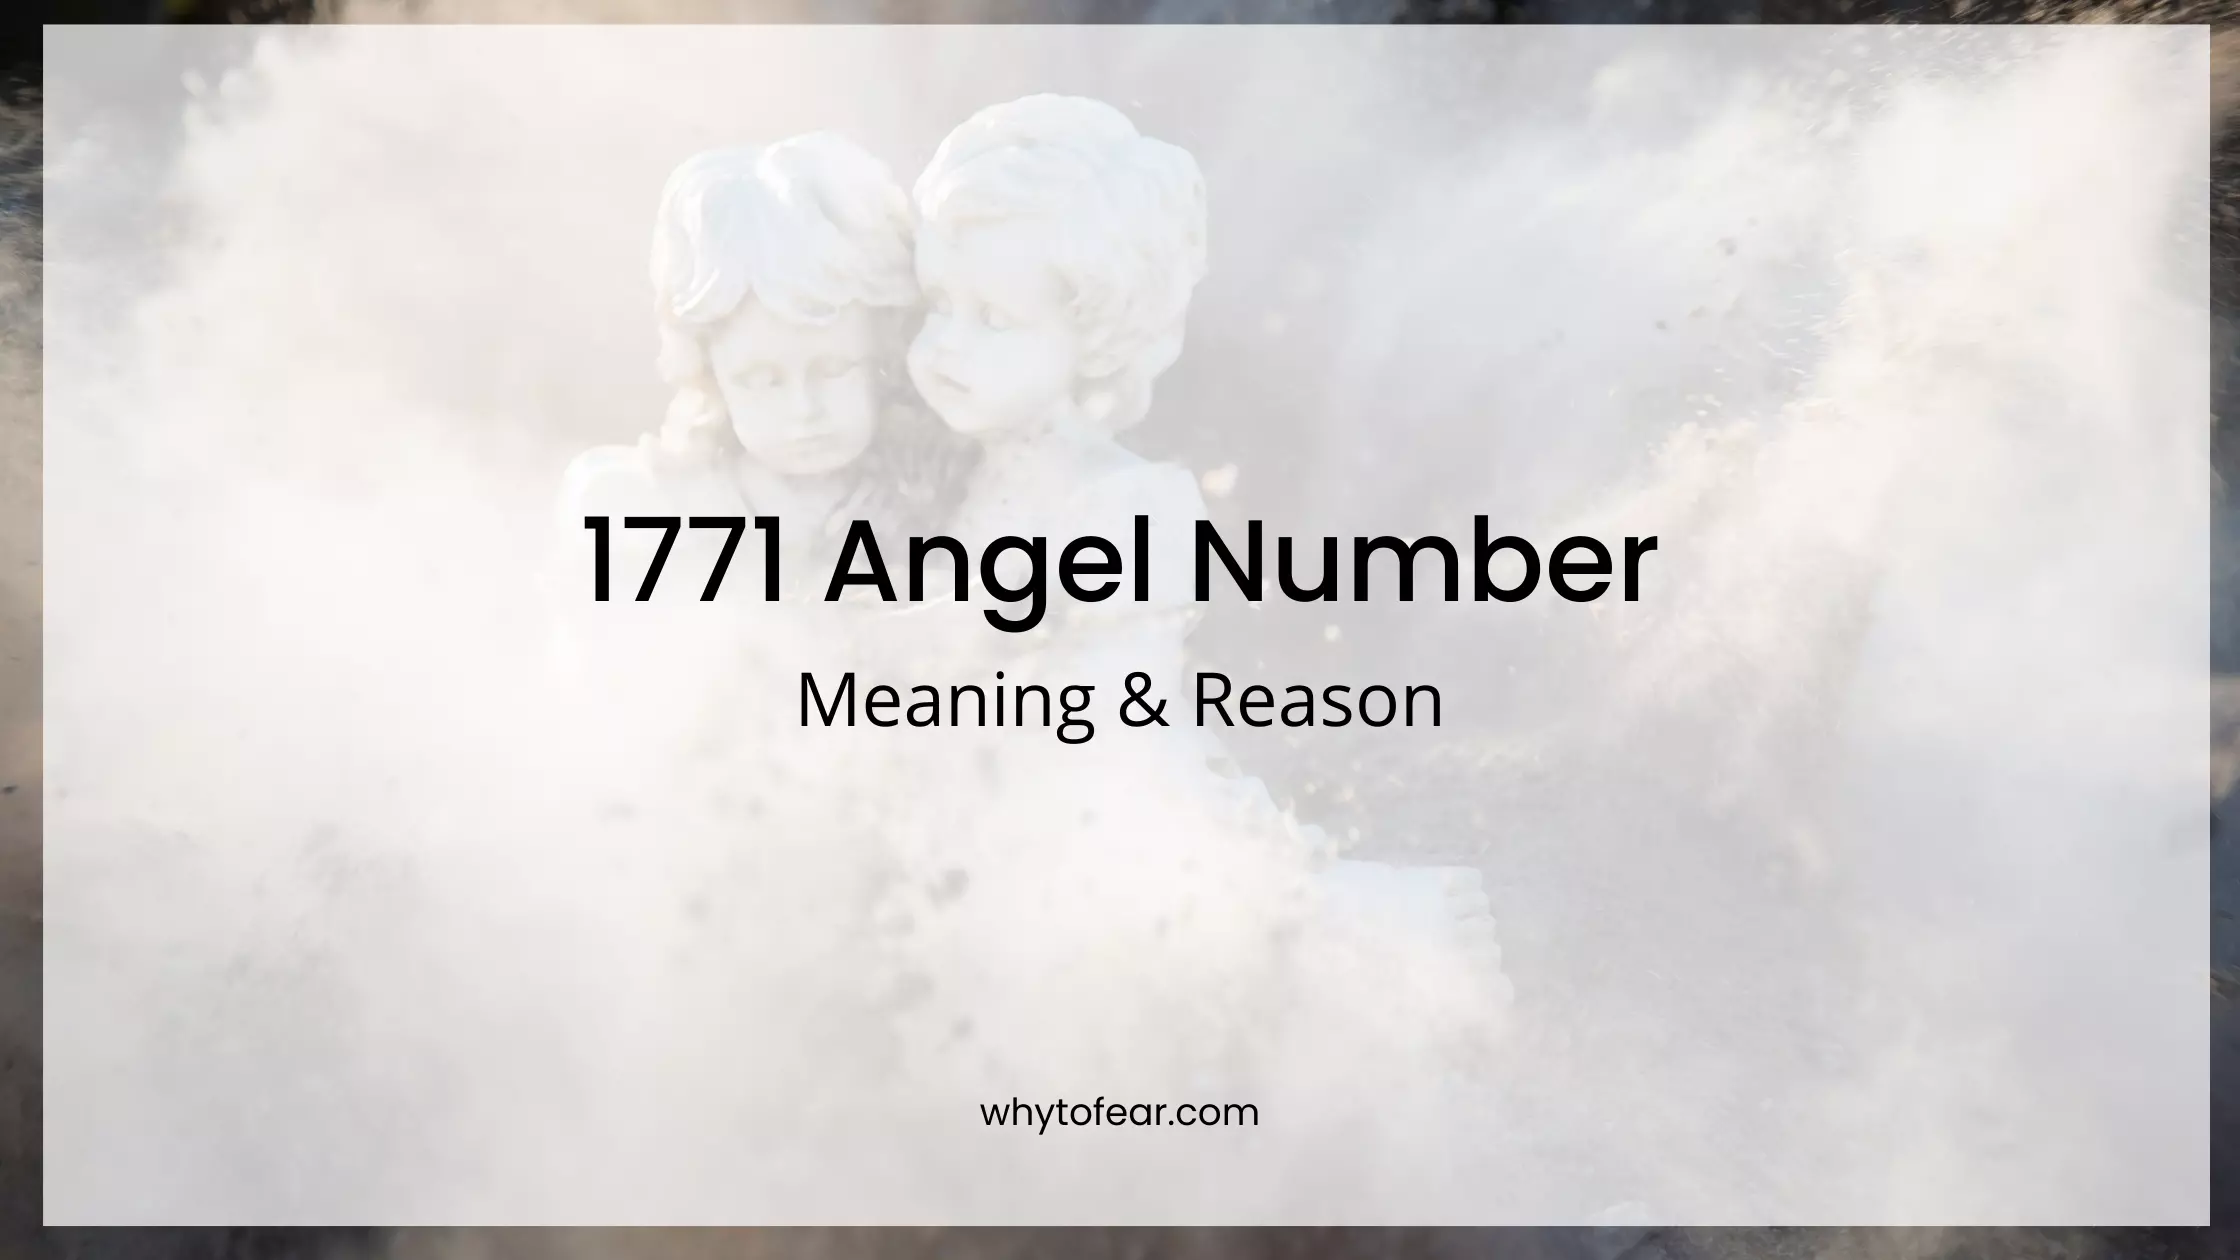 1771 angel number